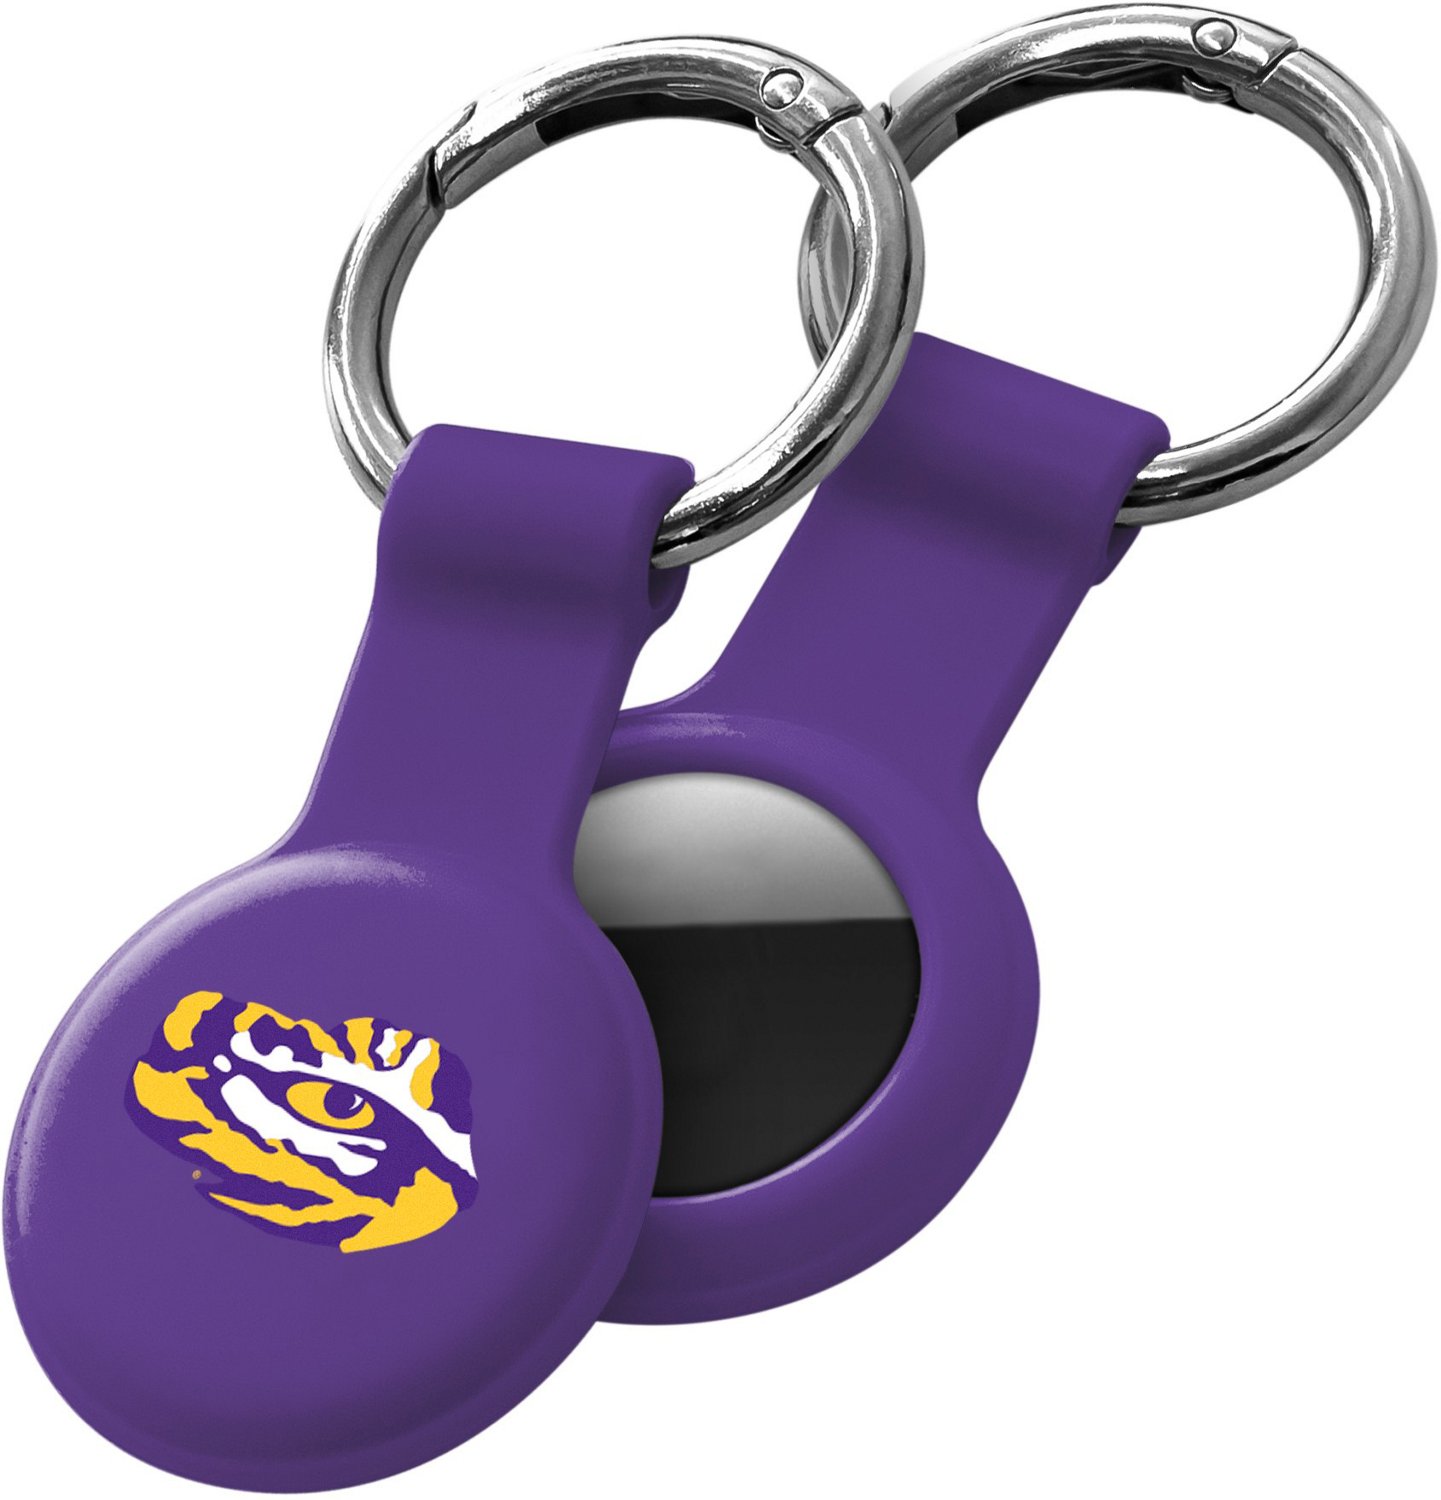 Louisiana State University Key Chain